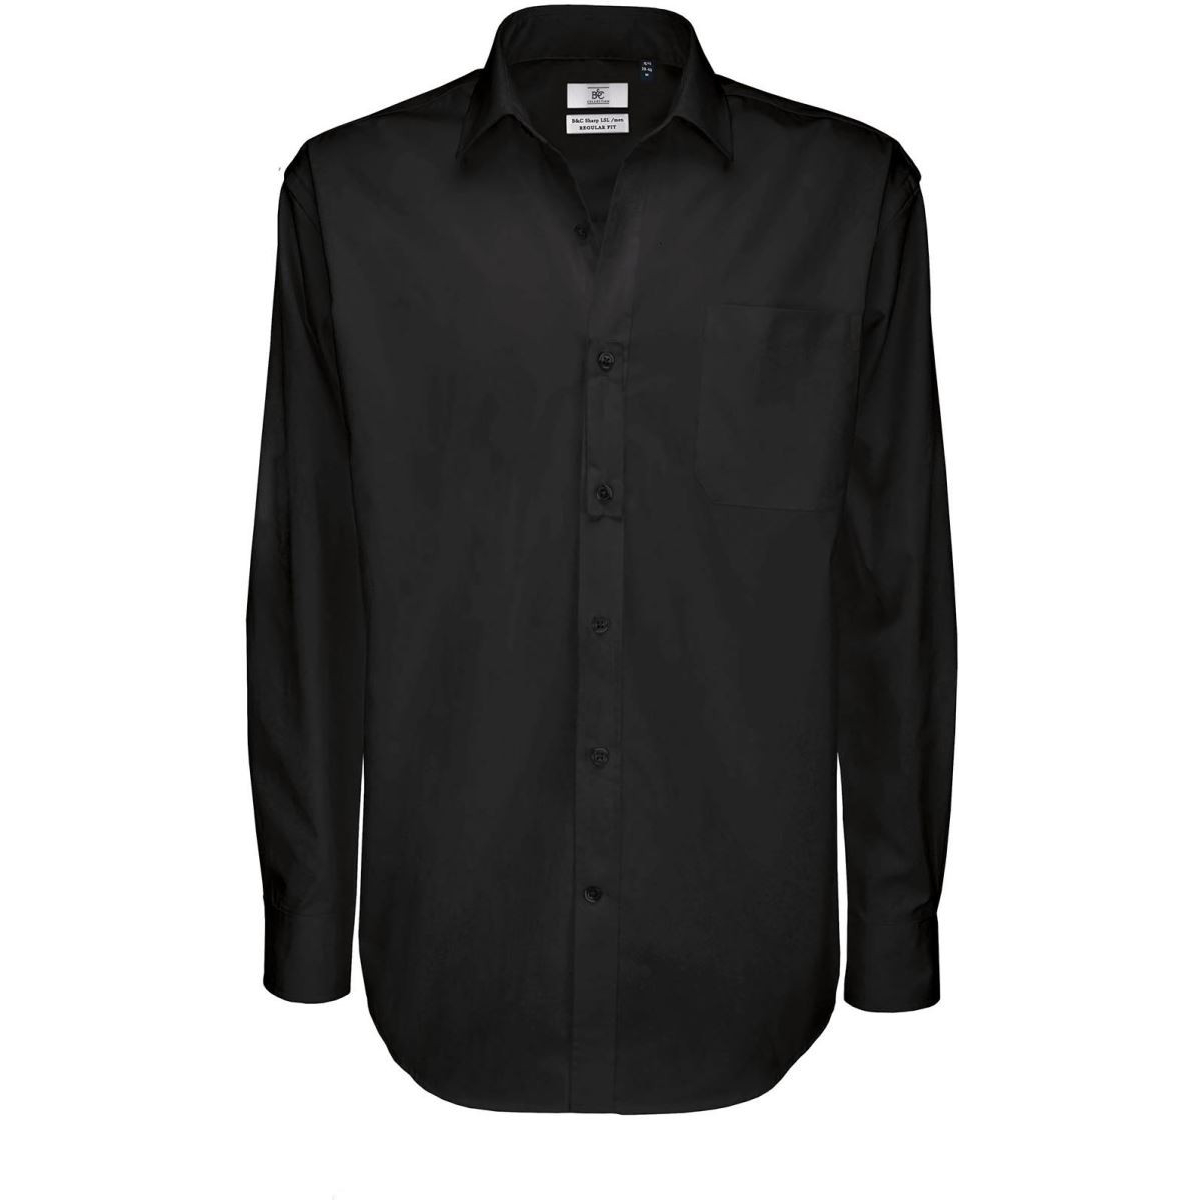 Pánská keprová košile B&C Sharp s dlouhým rukávem - černá, S